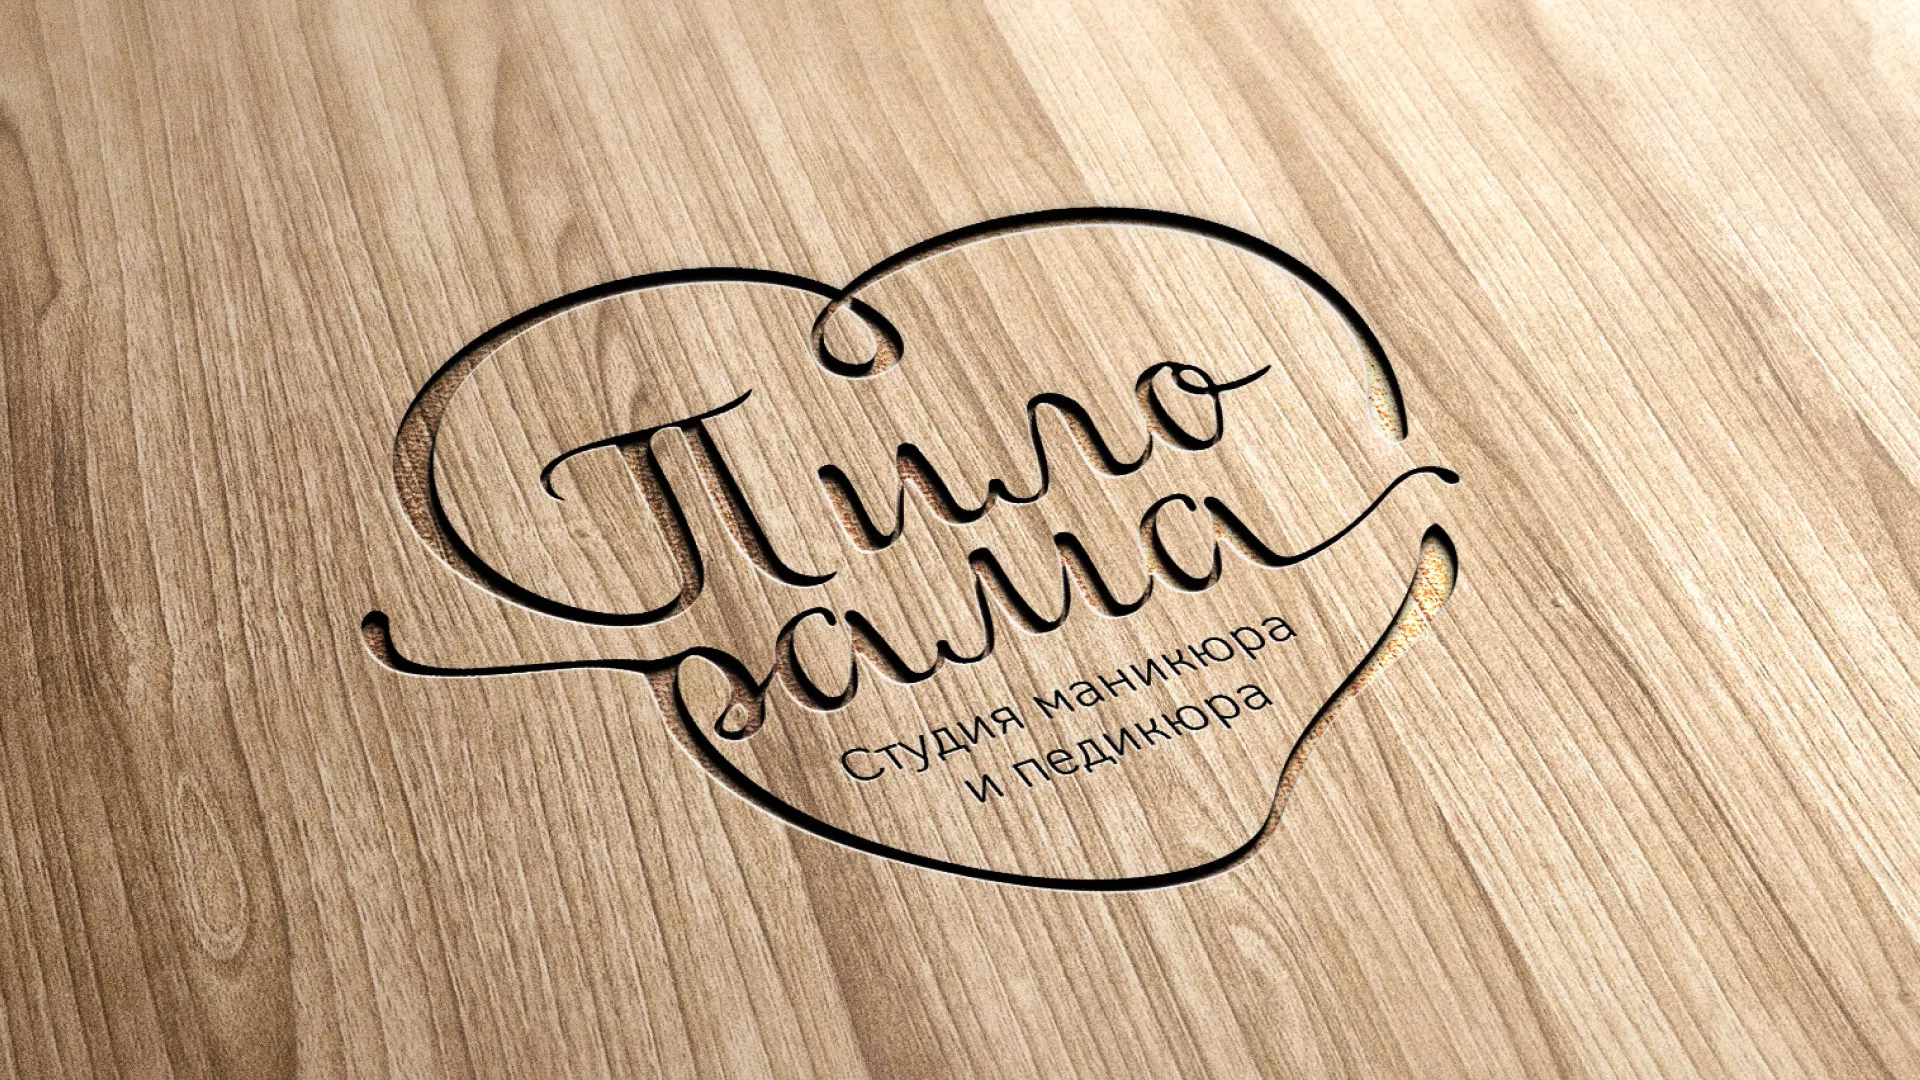 Разработка логотипа студии маникюра и педикюра «Пилорама» в Соколе